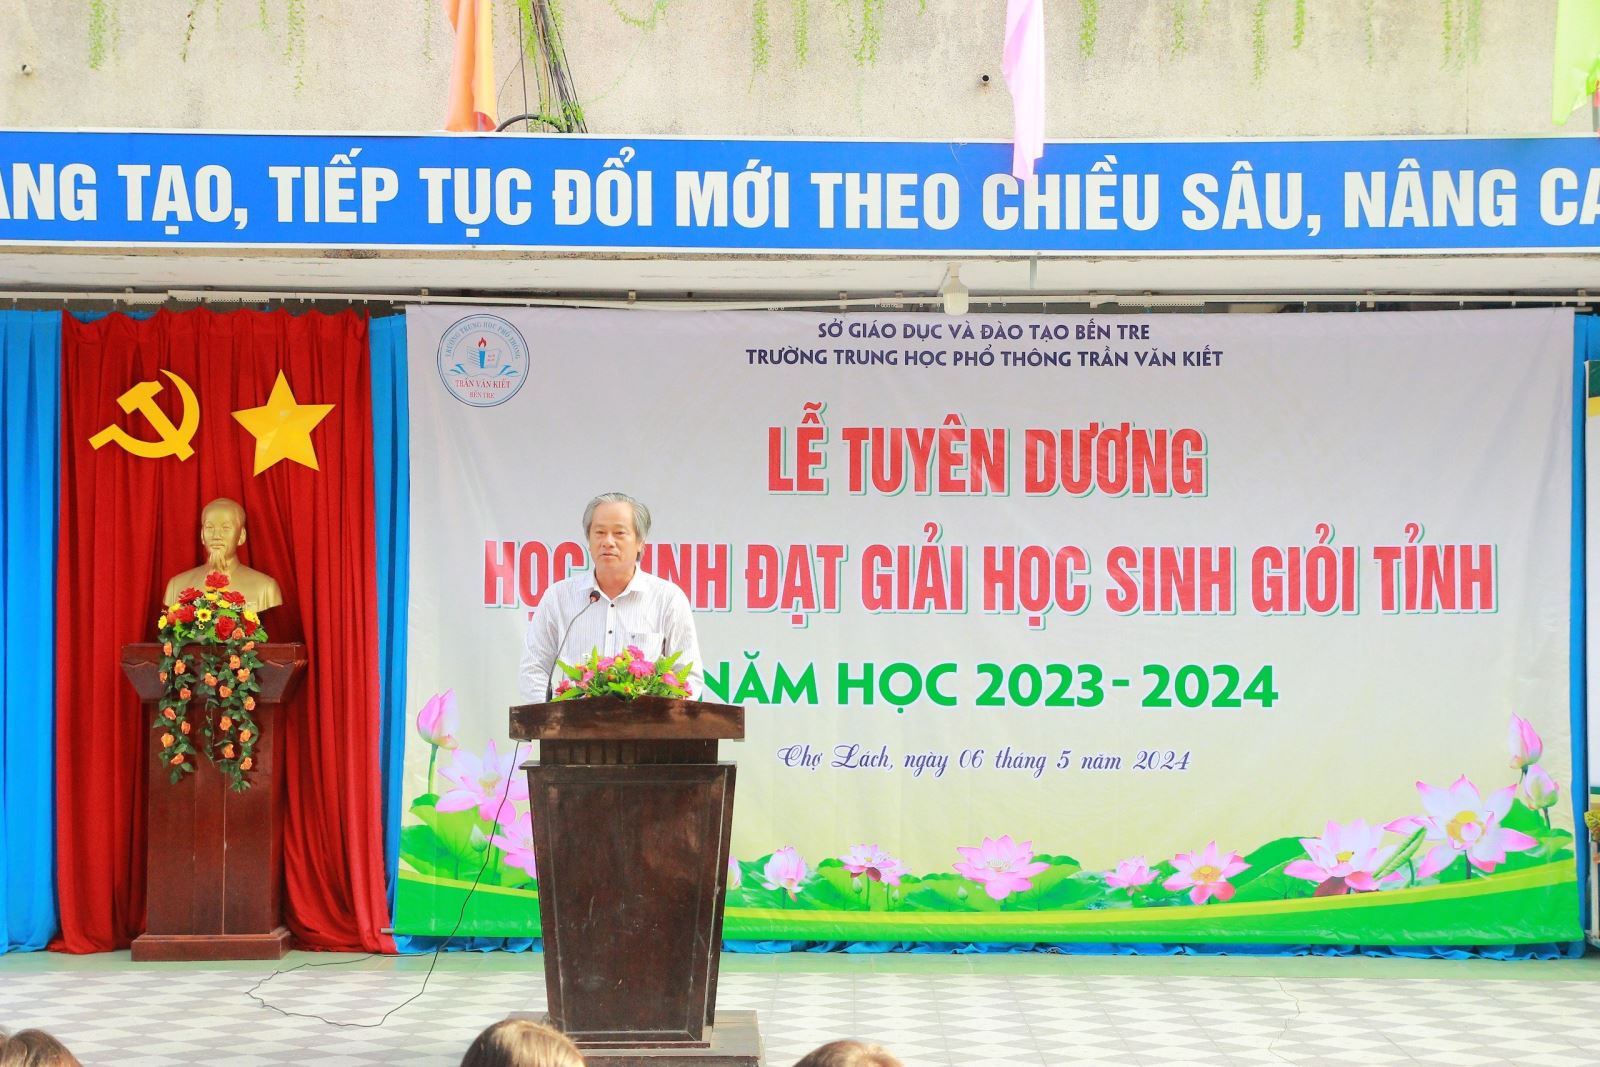 ông Nguyễn Minh Đức - Huyện ủy viên – Phó chủ tịch UBND huyện Chợ Lách  phát biểu.